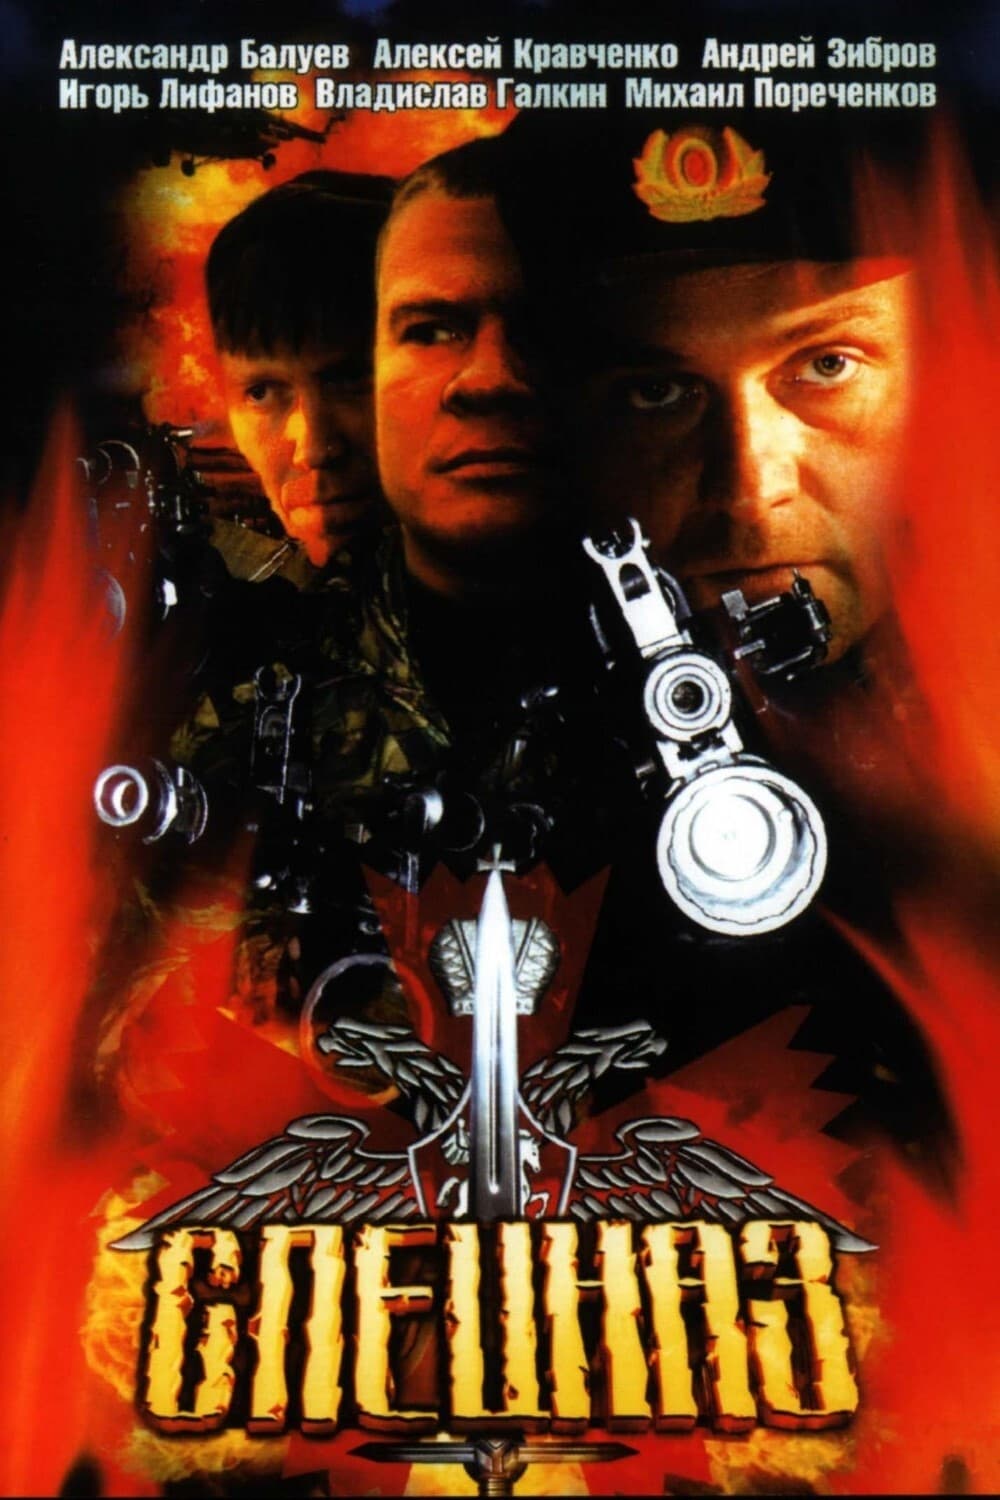 Special Squad (2002)